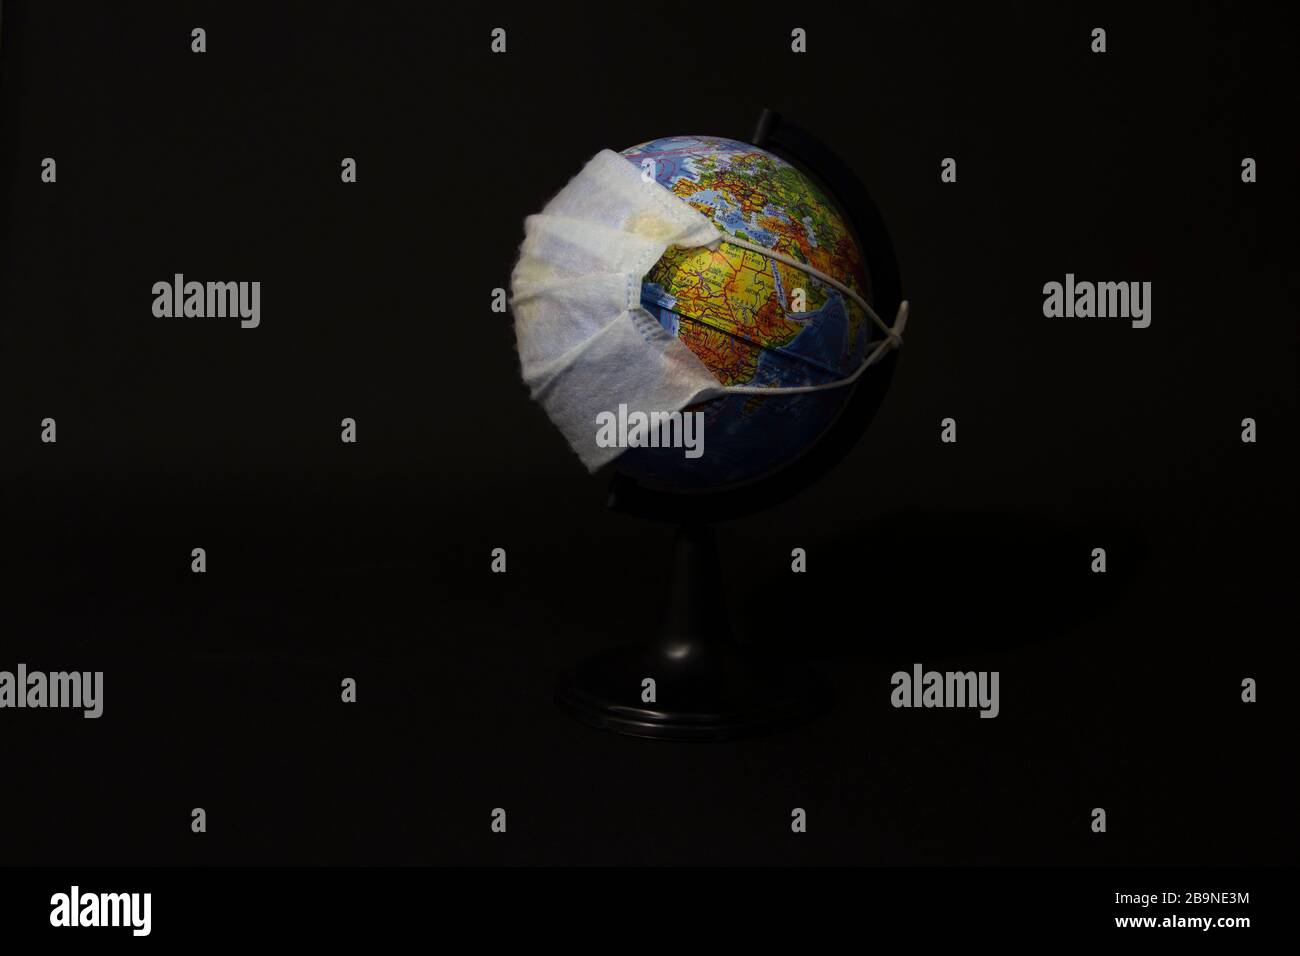 Globus in einer chirurgischen Maske, Sicherheitsmaske, Konzept einer globalen Pandemie oder Epidemie auf schwarzem Hintergrund Stockfoto